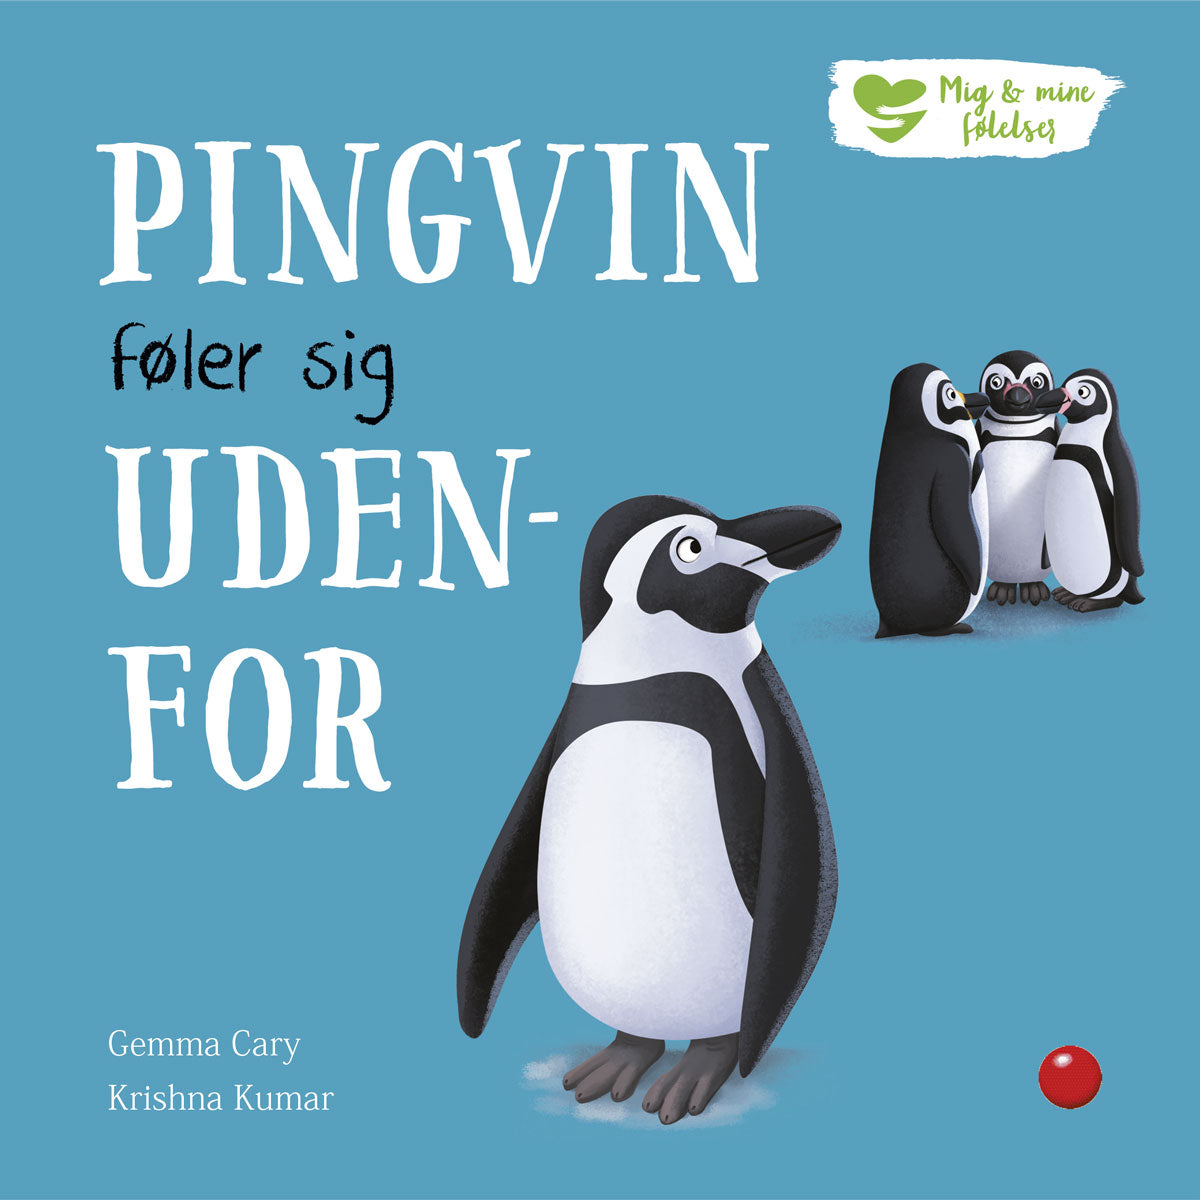 Mig og mine Pingvin føler sig udenfor – BørnenesBoghandel